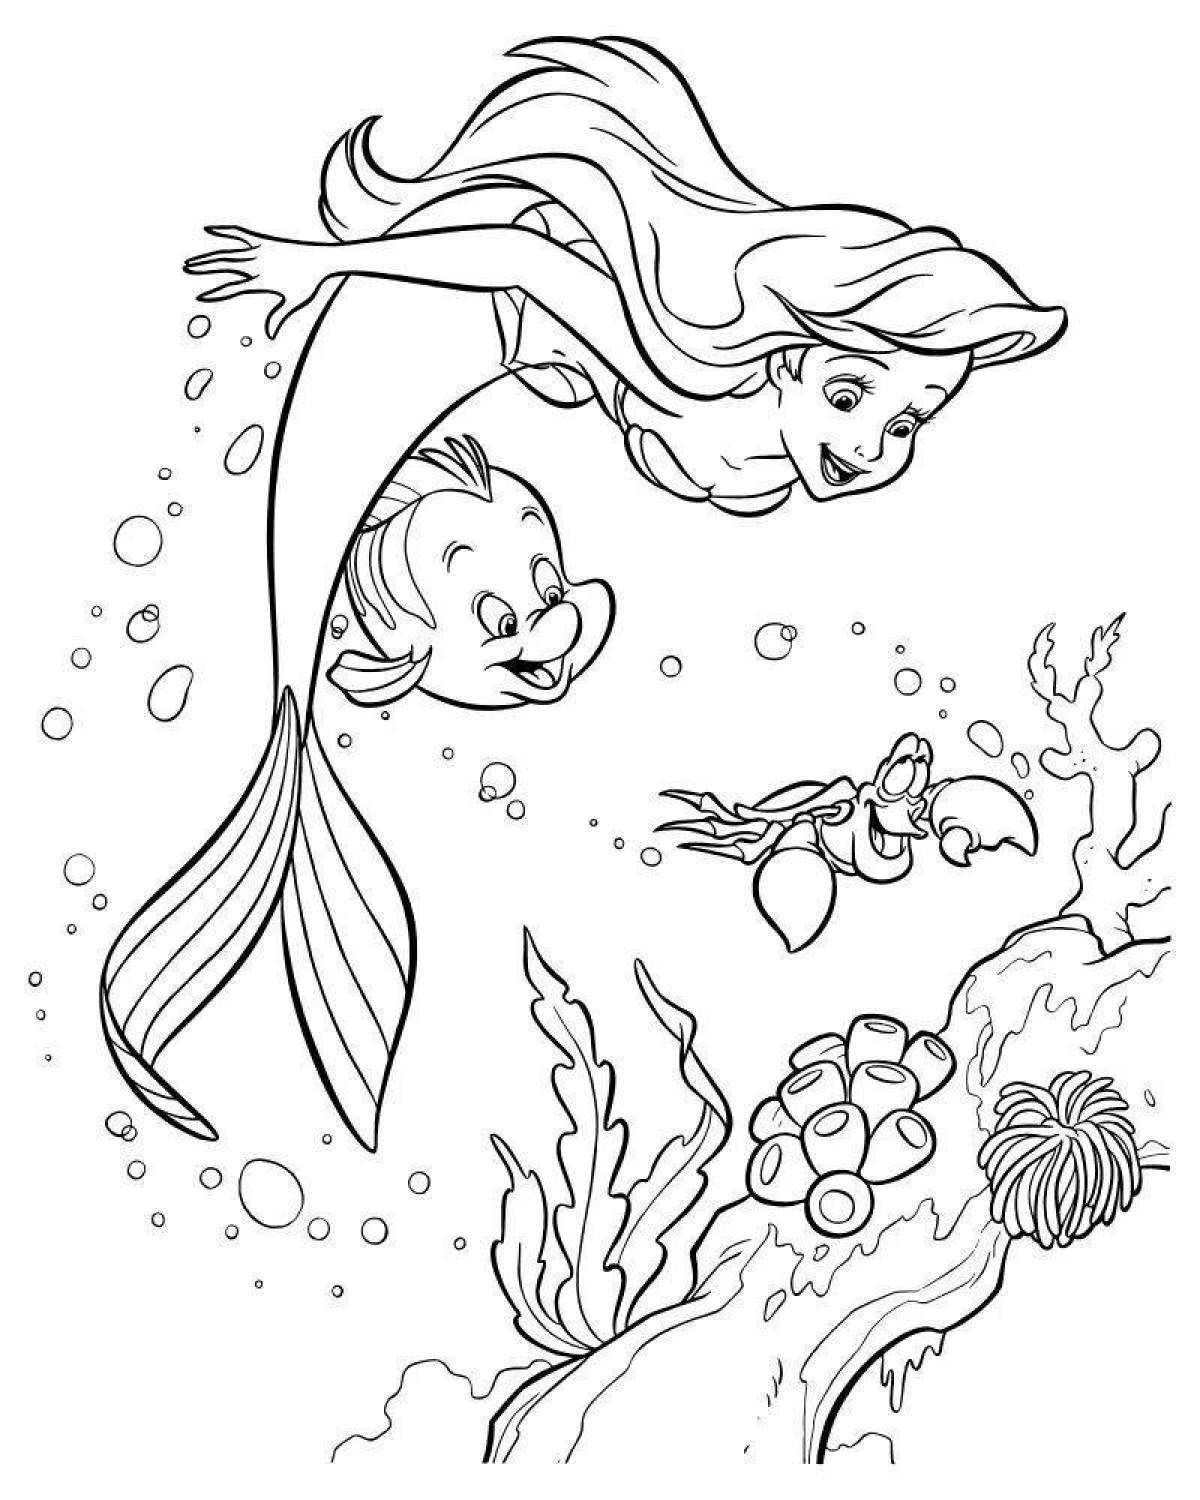 Exquisite coloring mermaid ariel